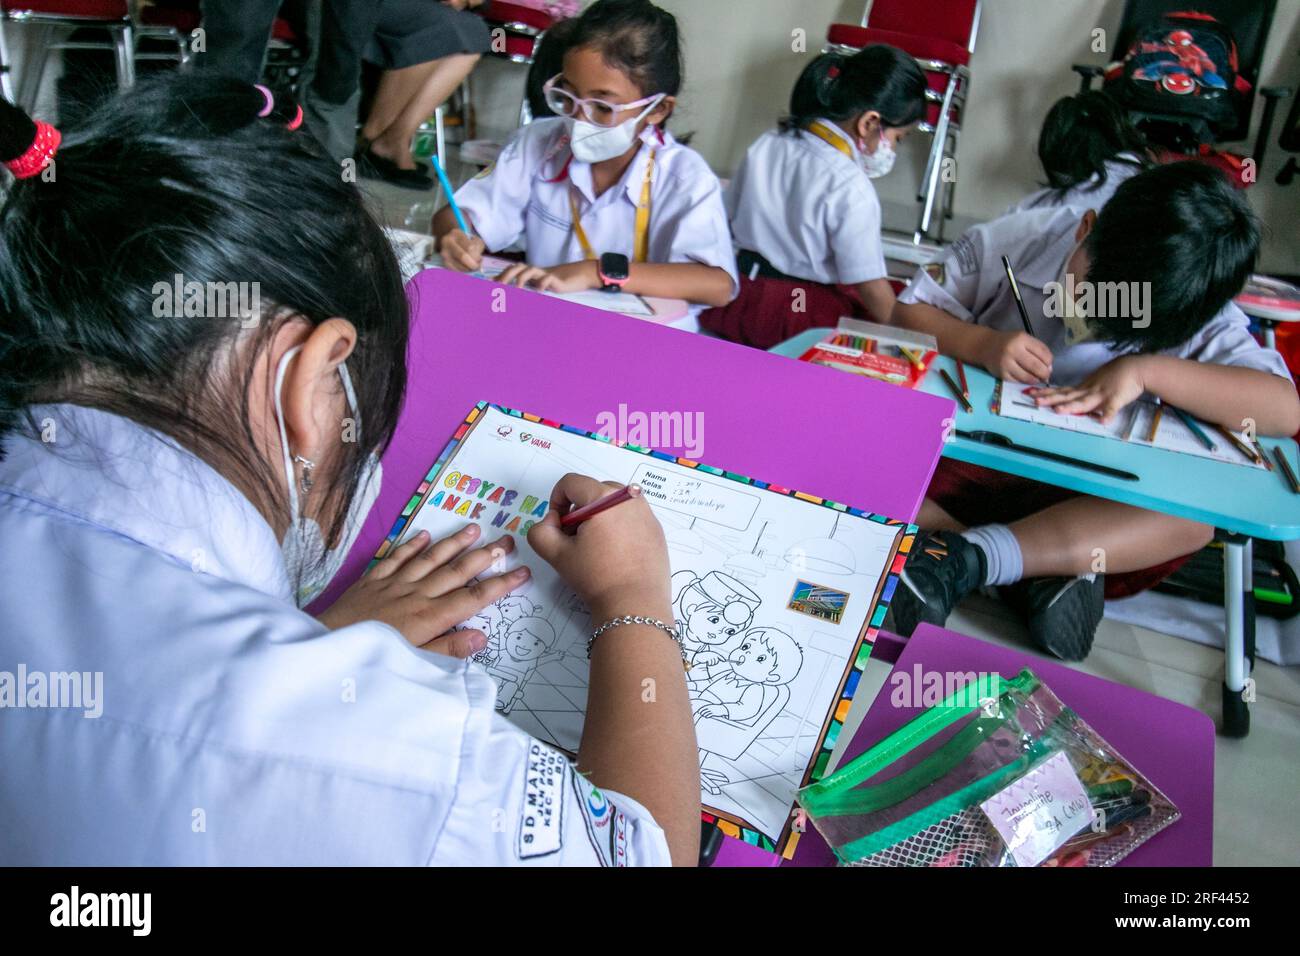 Gli studenti delle scuole elementari a Bogor City, Indonesia, svolgono attività di colorazione su immagini a tema sanitario mentre visitano l'ospedale Vania Bogor Foto Stock